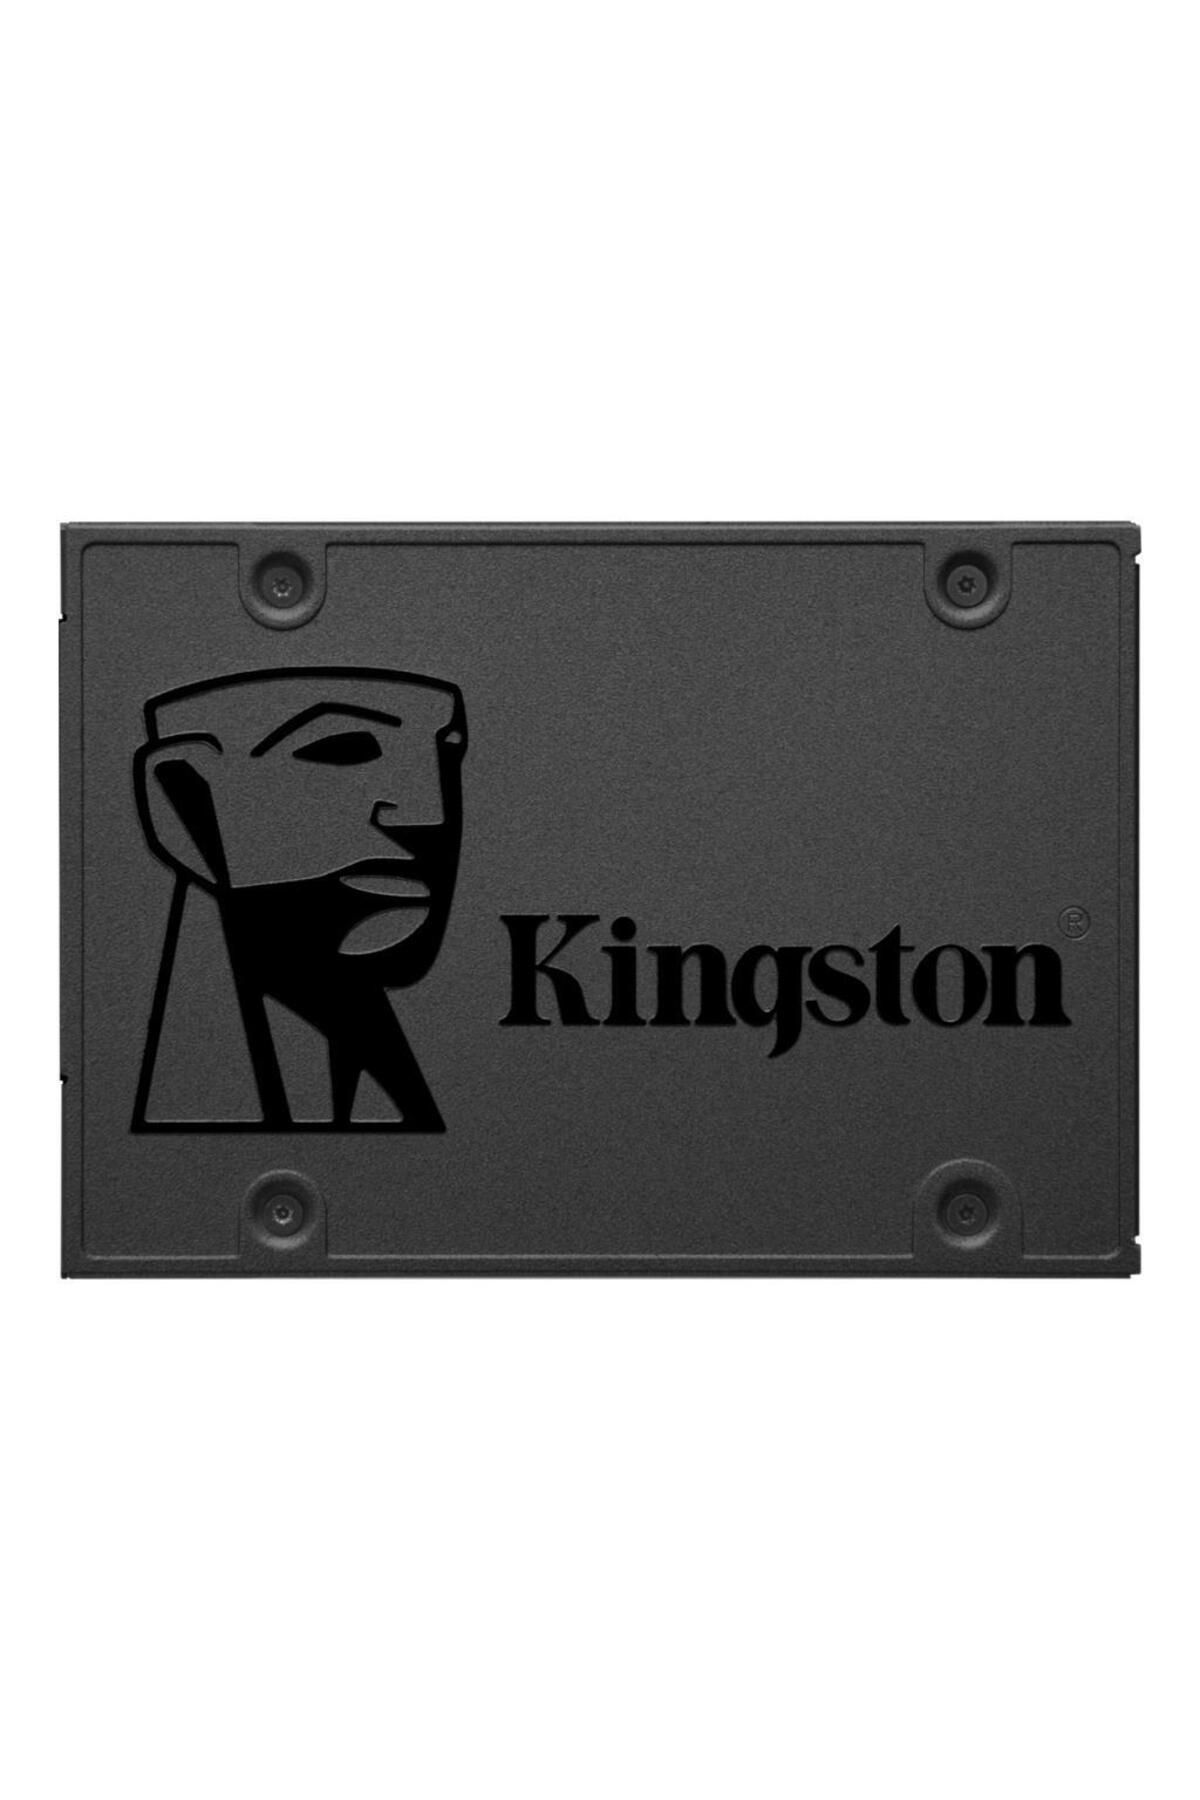 Kingston A400 Sa400s37/960g 2.5" 960 Gb Sata 3 Ssd